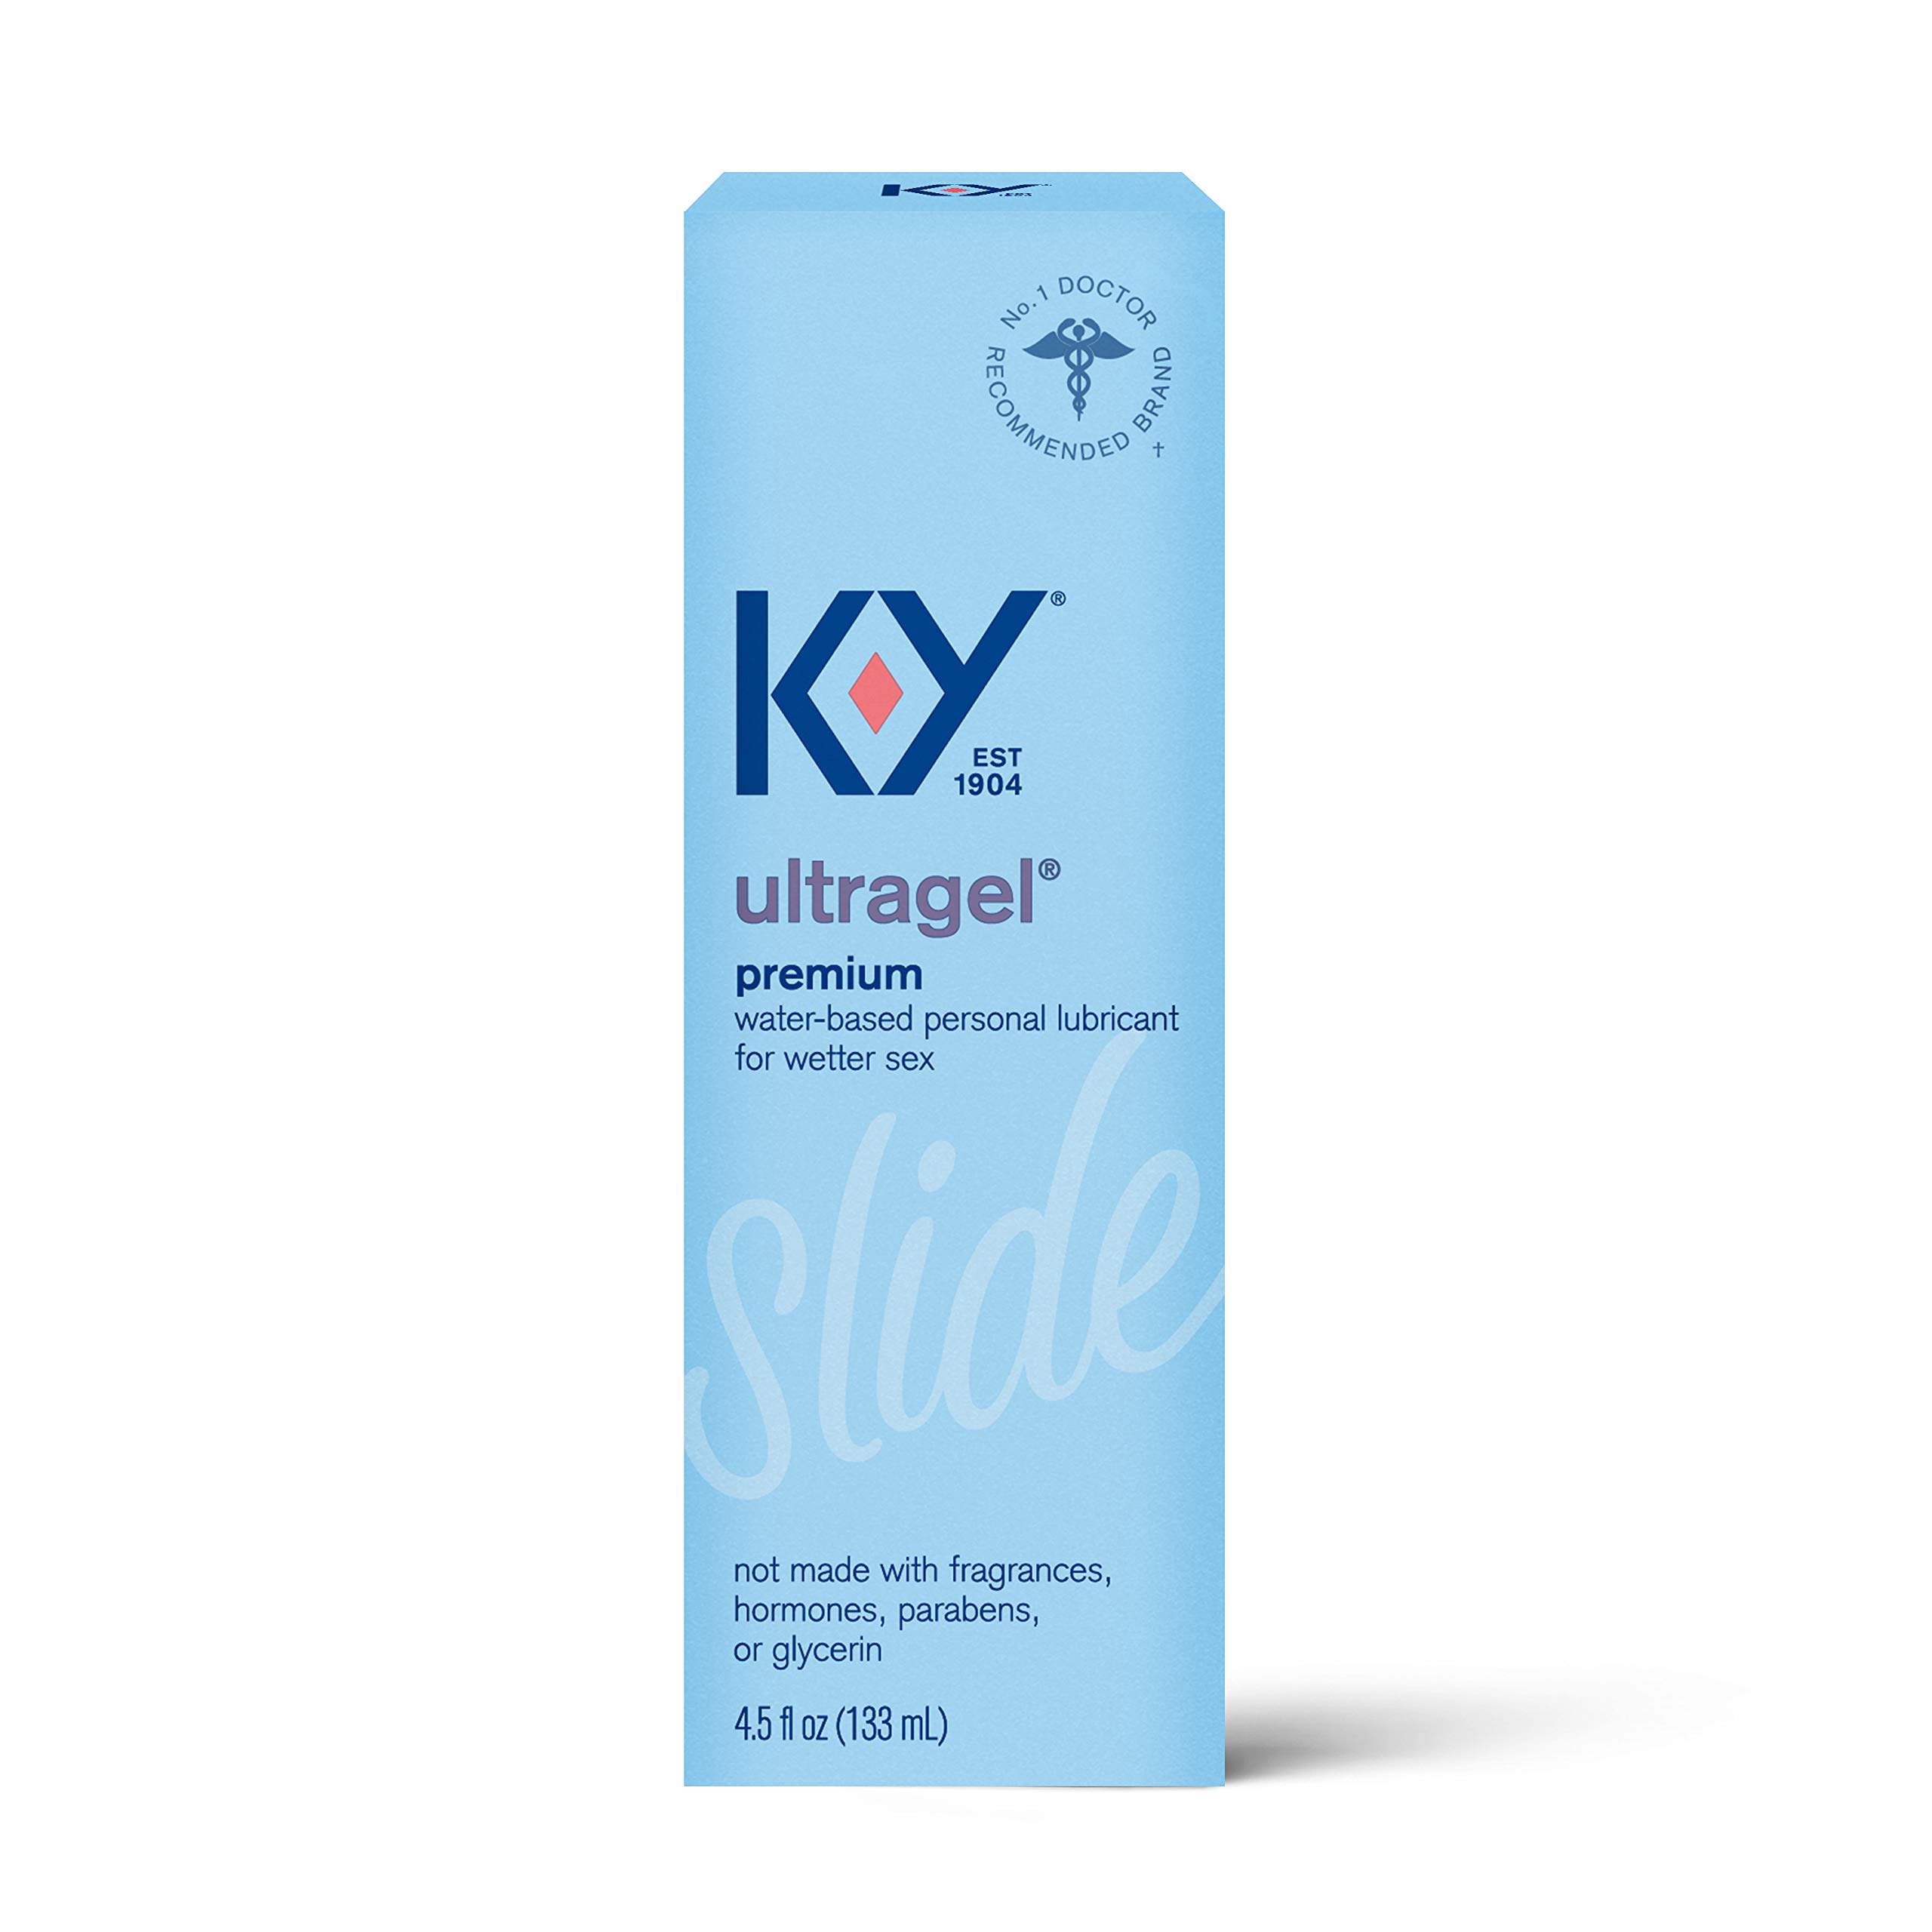 K-Y Ultragel Lube、パーソナル潤滑剤、水ベースのフォーミュラ、シリコンおもちゃと一緒に安全に使用、男性、女性、カップル向け、4.5 FL OZ